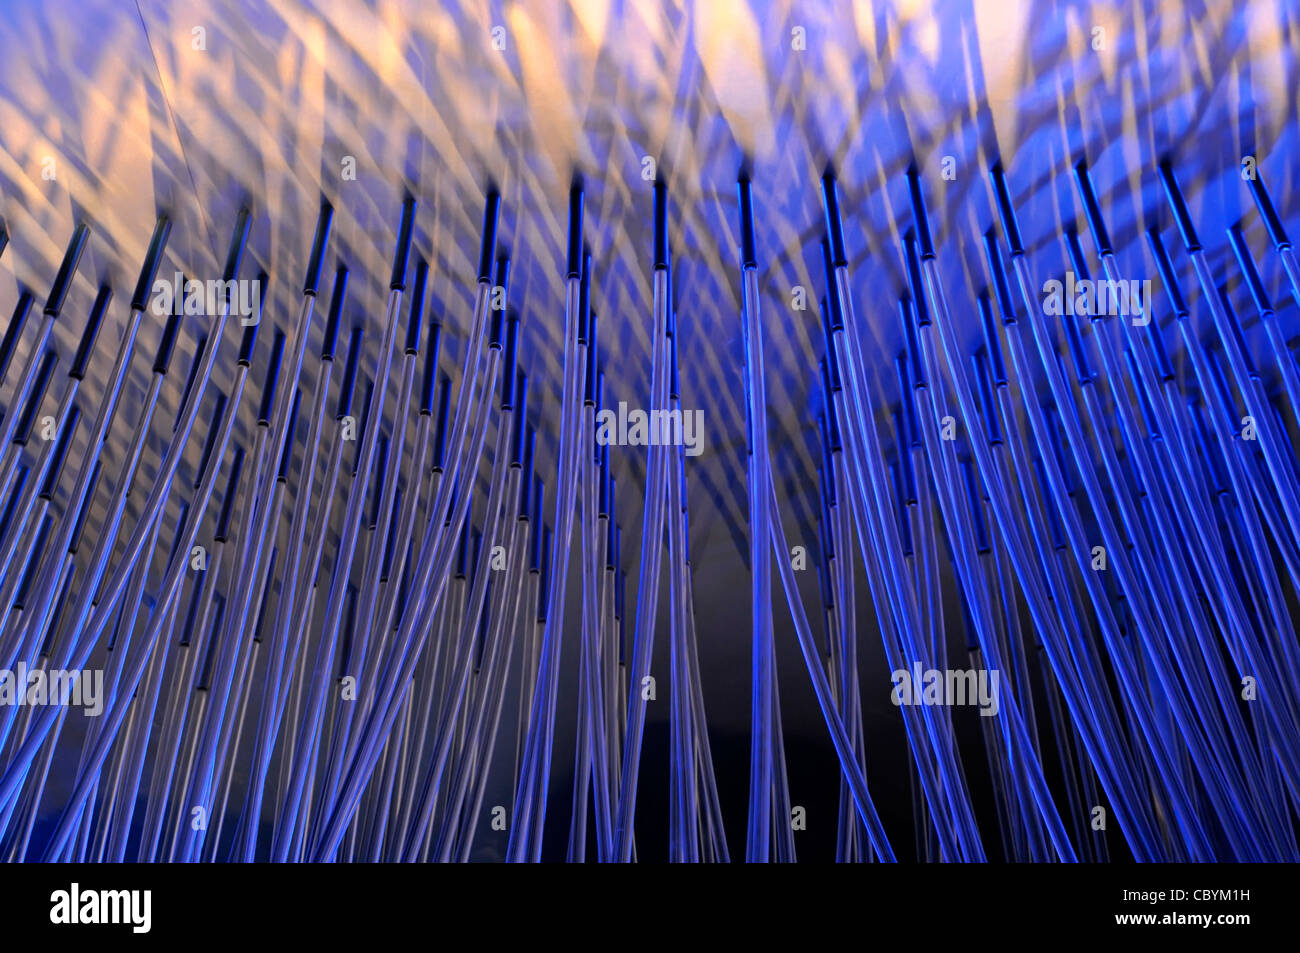 Blau abstrakt Hintergrund eines blauen Beleuchtung Display random schiefen Stangen & Bars replizieren Technologie Thema mit einem Hauch von Wasser Jet spray angewendet Stockfoto